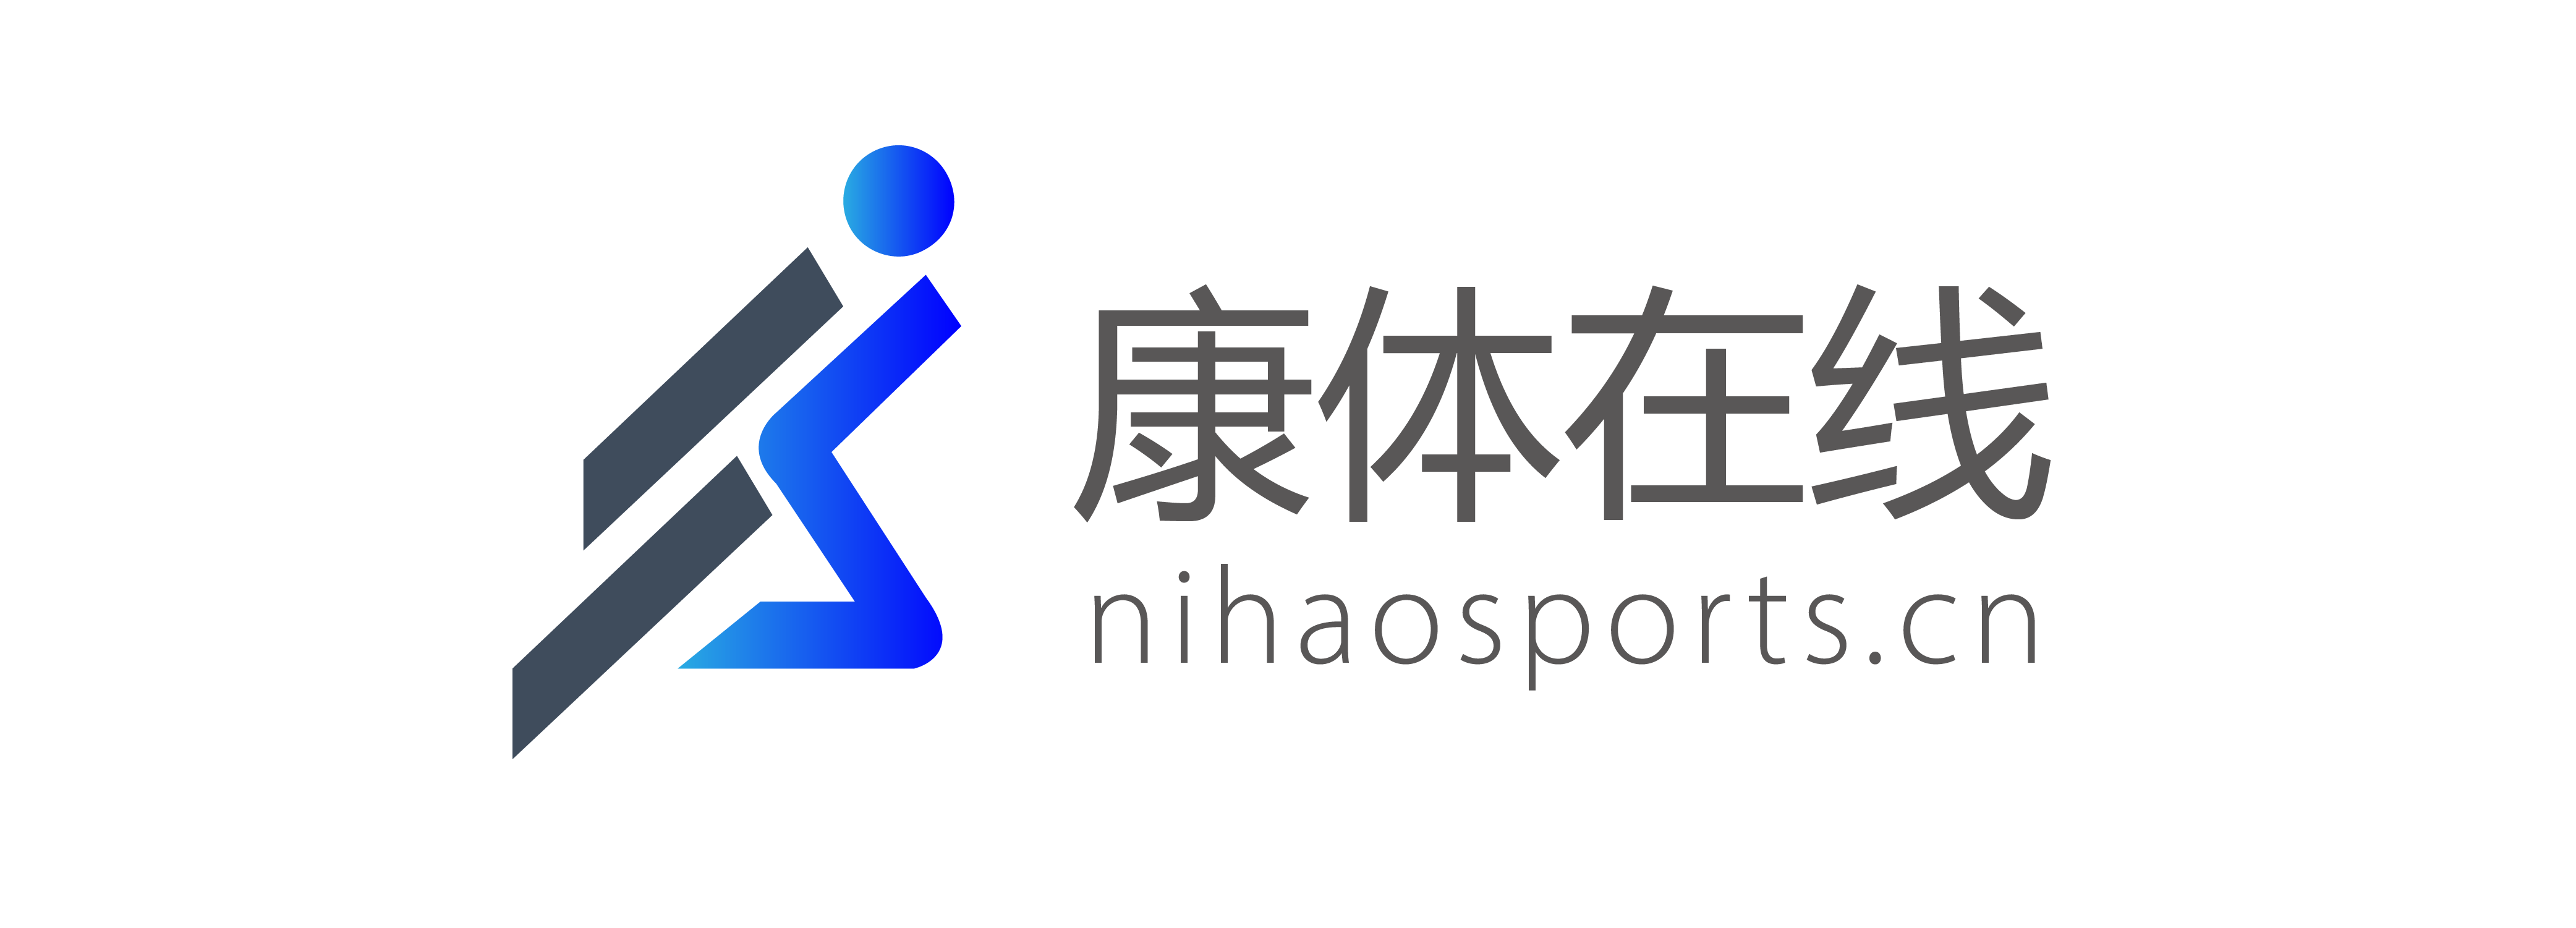 B2B plantform-Nihaosports